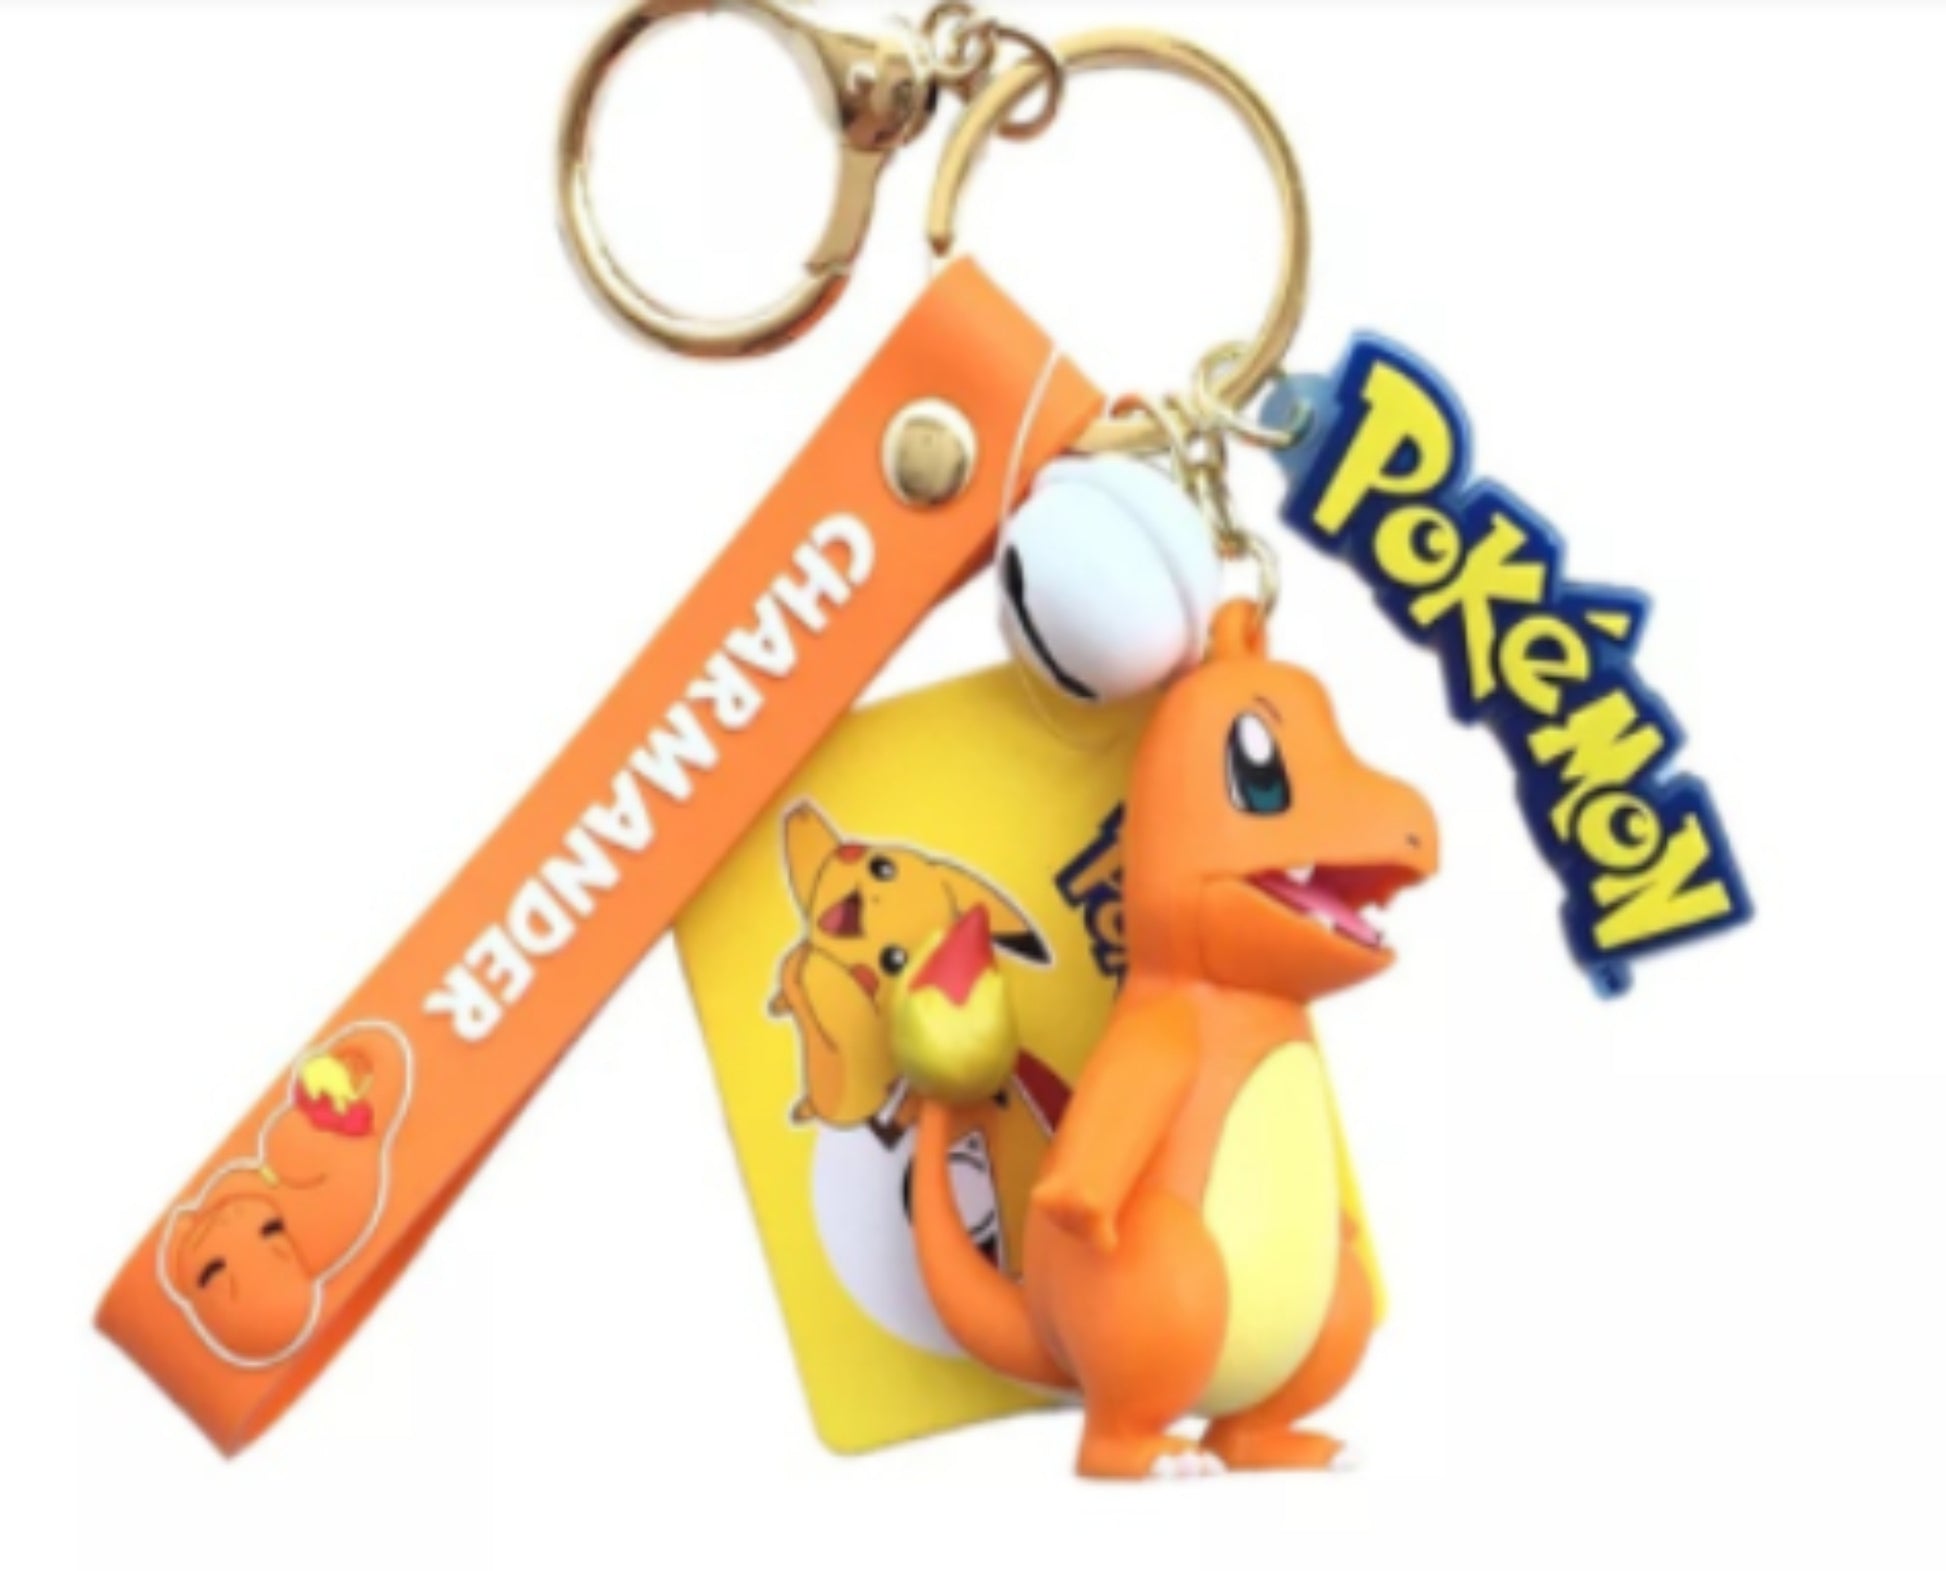 Genuíno pokemon figura de a??o pikachu chaveiro pokémon squirtle psyduck chaveiro modelo carro chaveiro - STEP BACK LOOK IN LLC